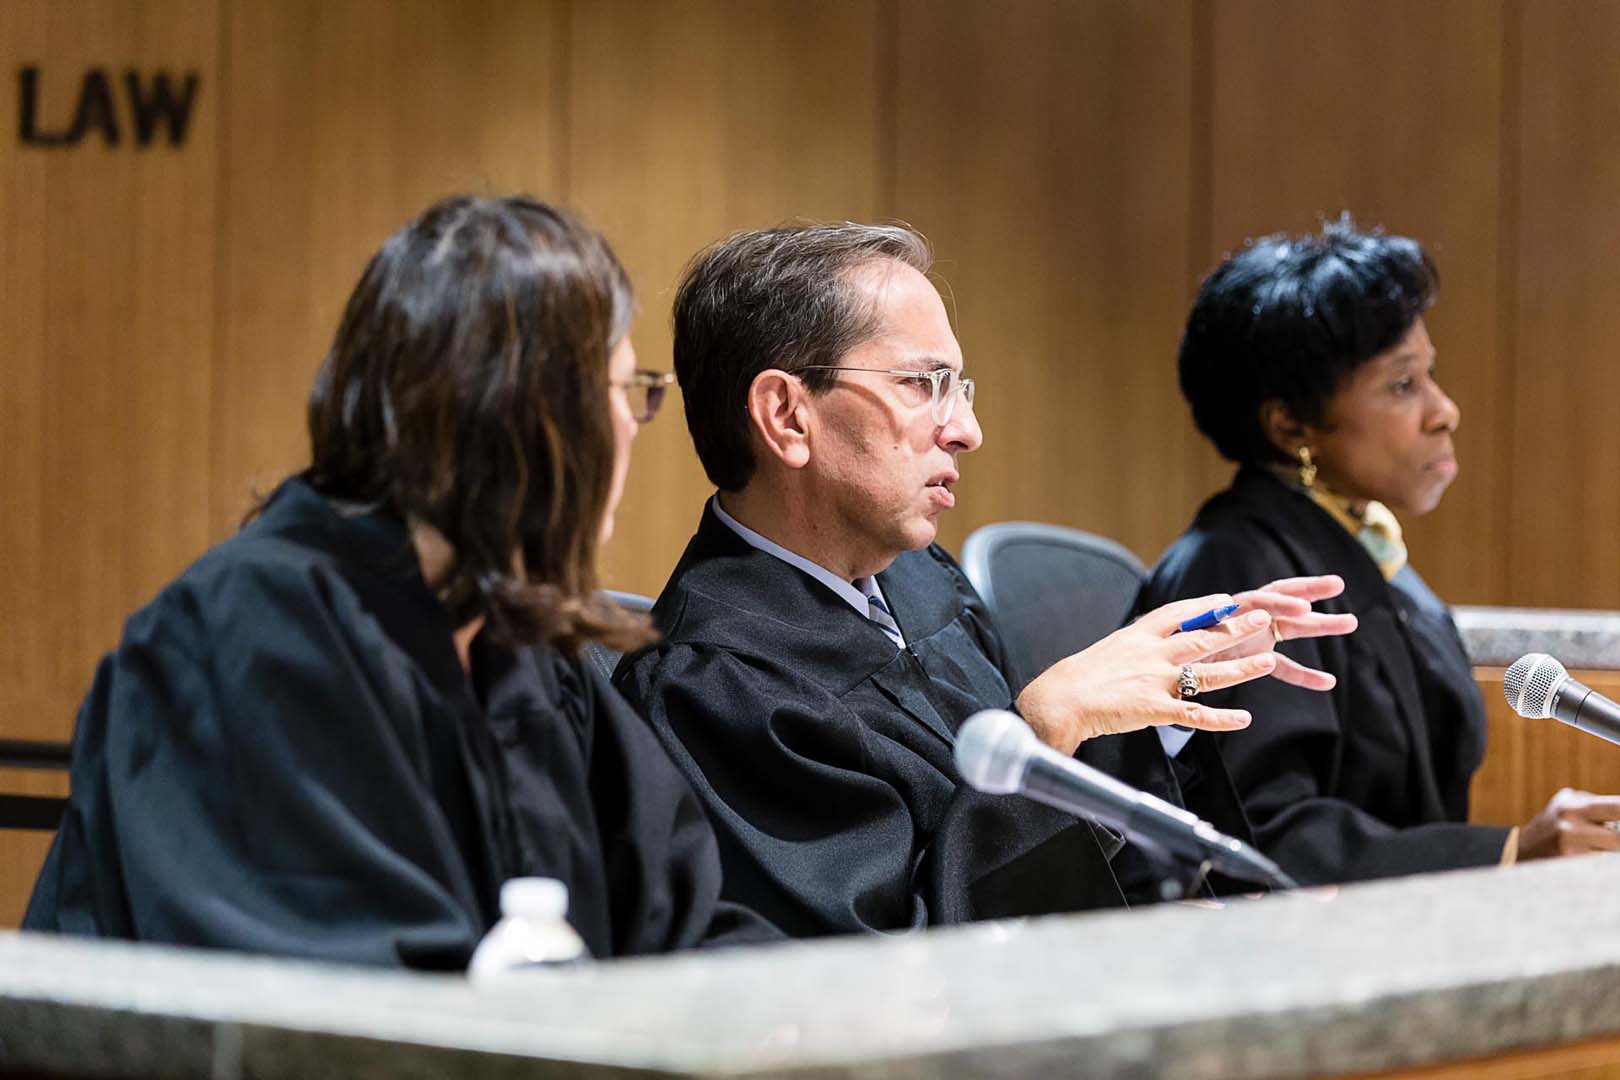 Judge vonda evans